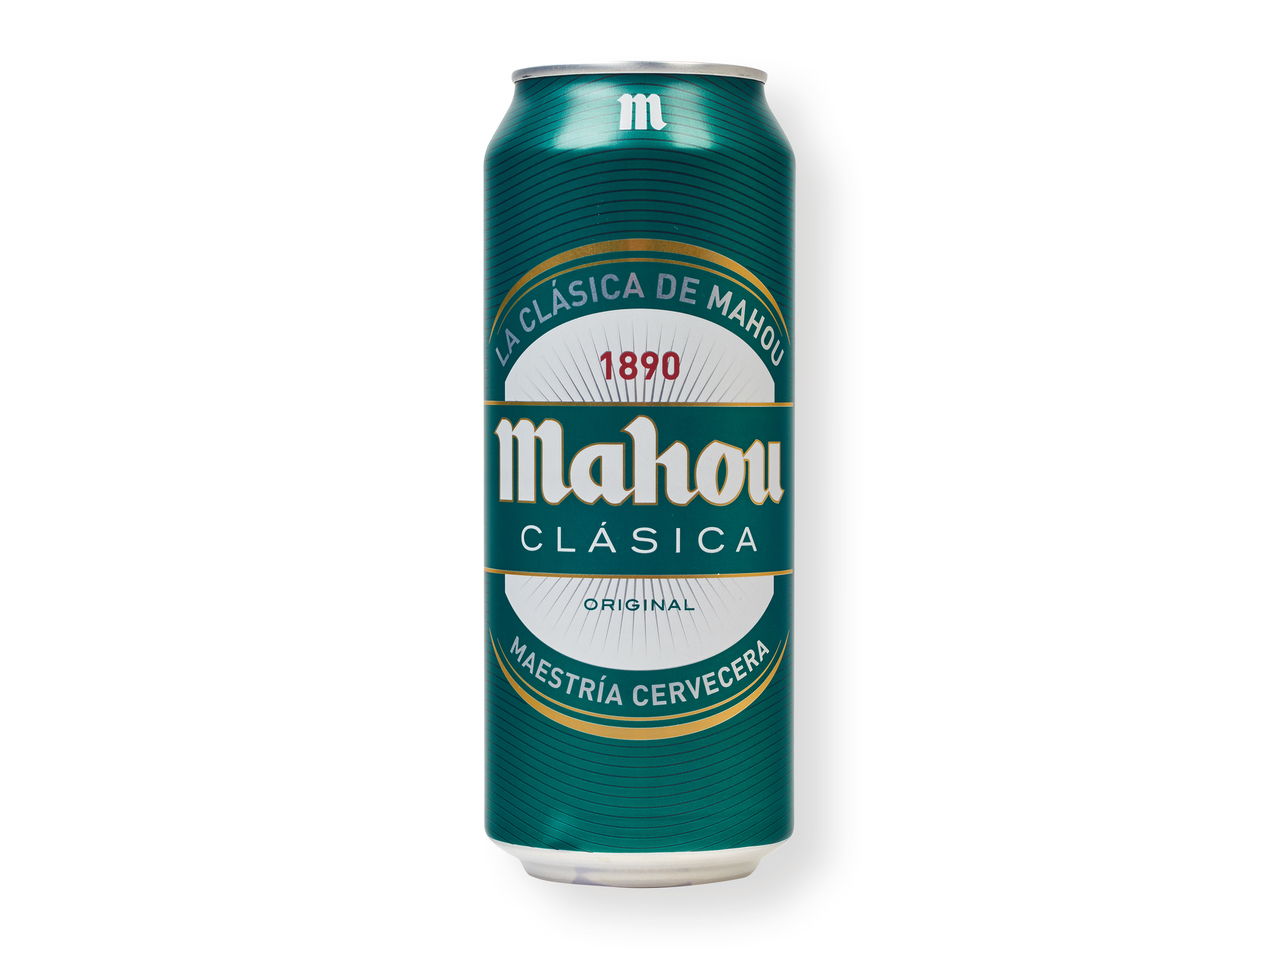 'Mahou(R)' Cerveza maestra